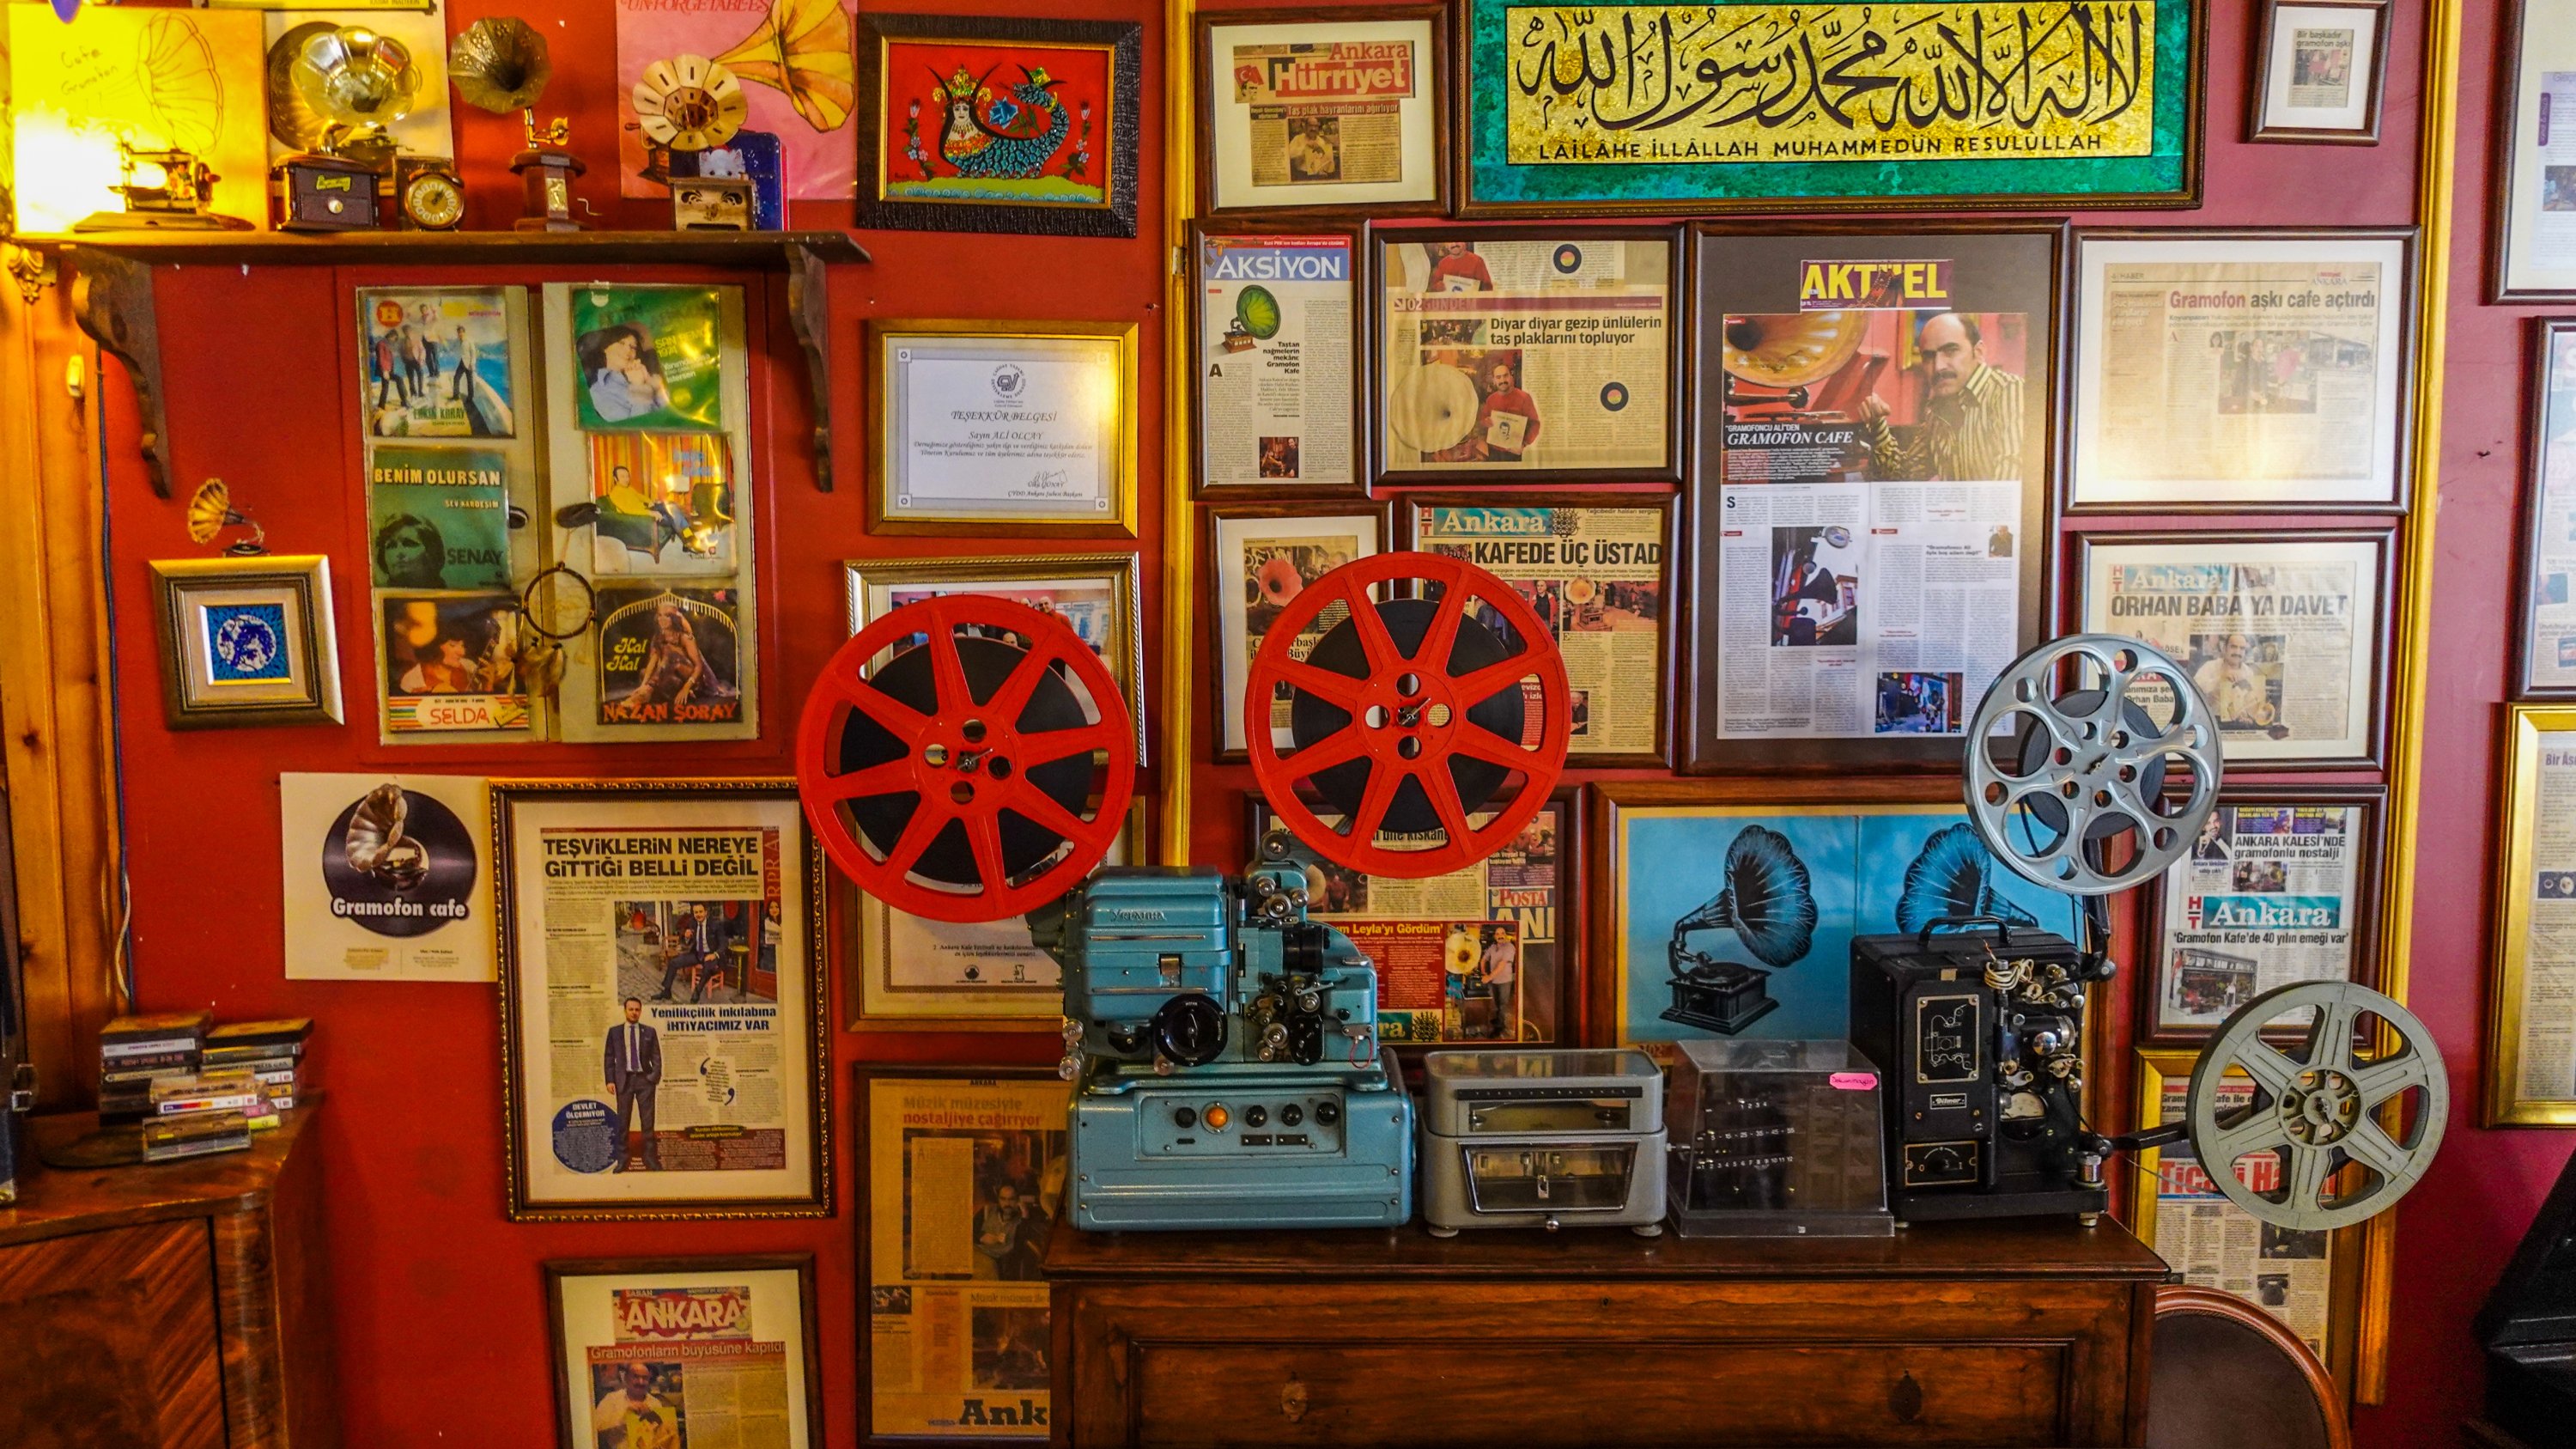   Gramofon Cafe est connu pour son design nostalgique et son atmosphère vintage.  (Photo par Argun Konuk)